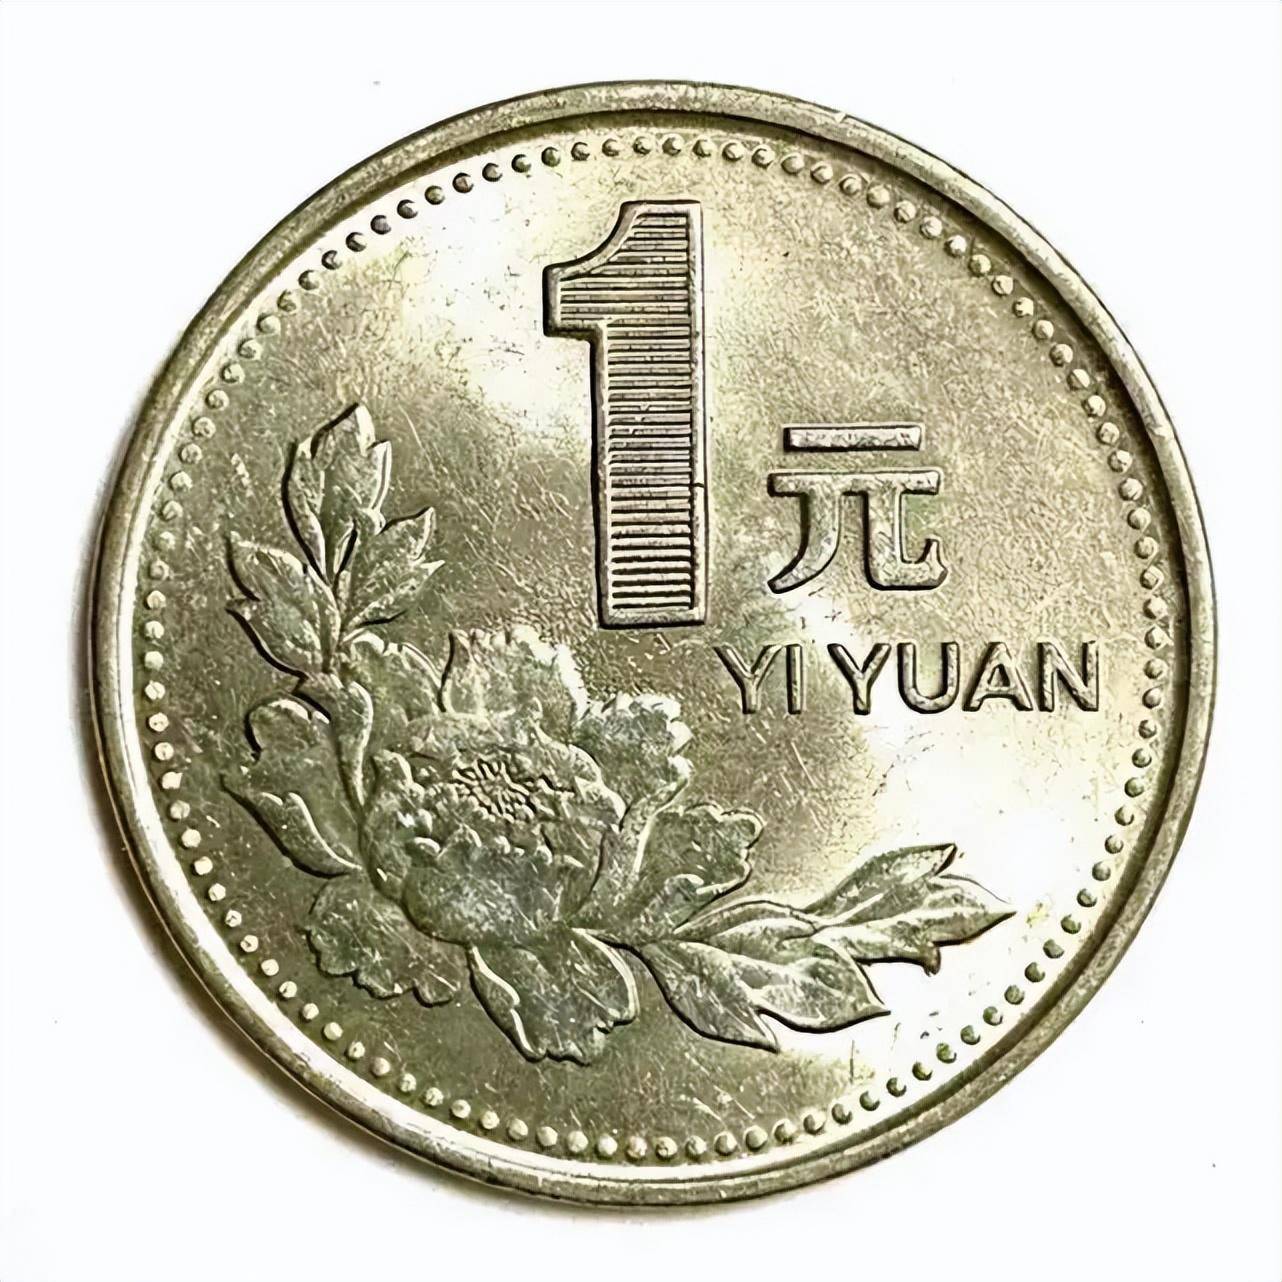 我国发行的1元纪念币中,哪一枚市价可达8000